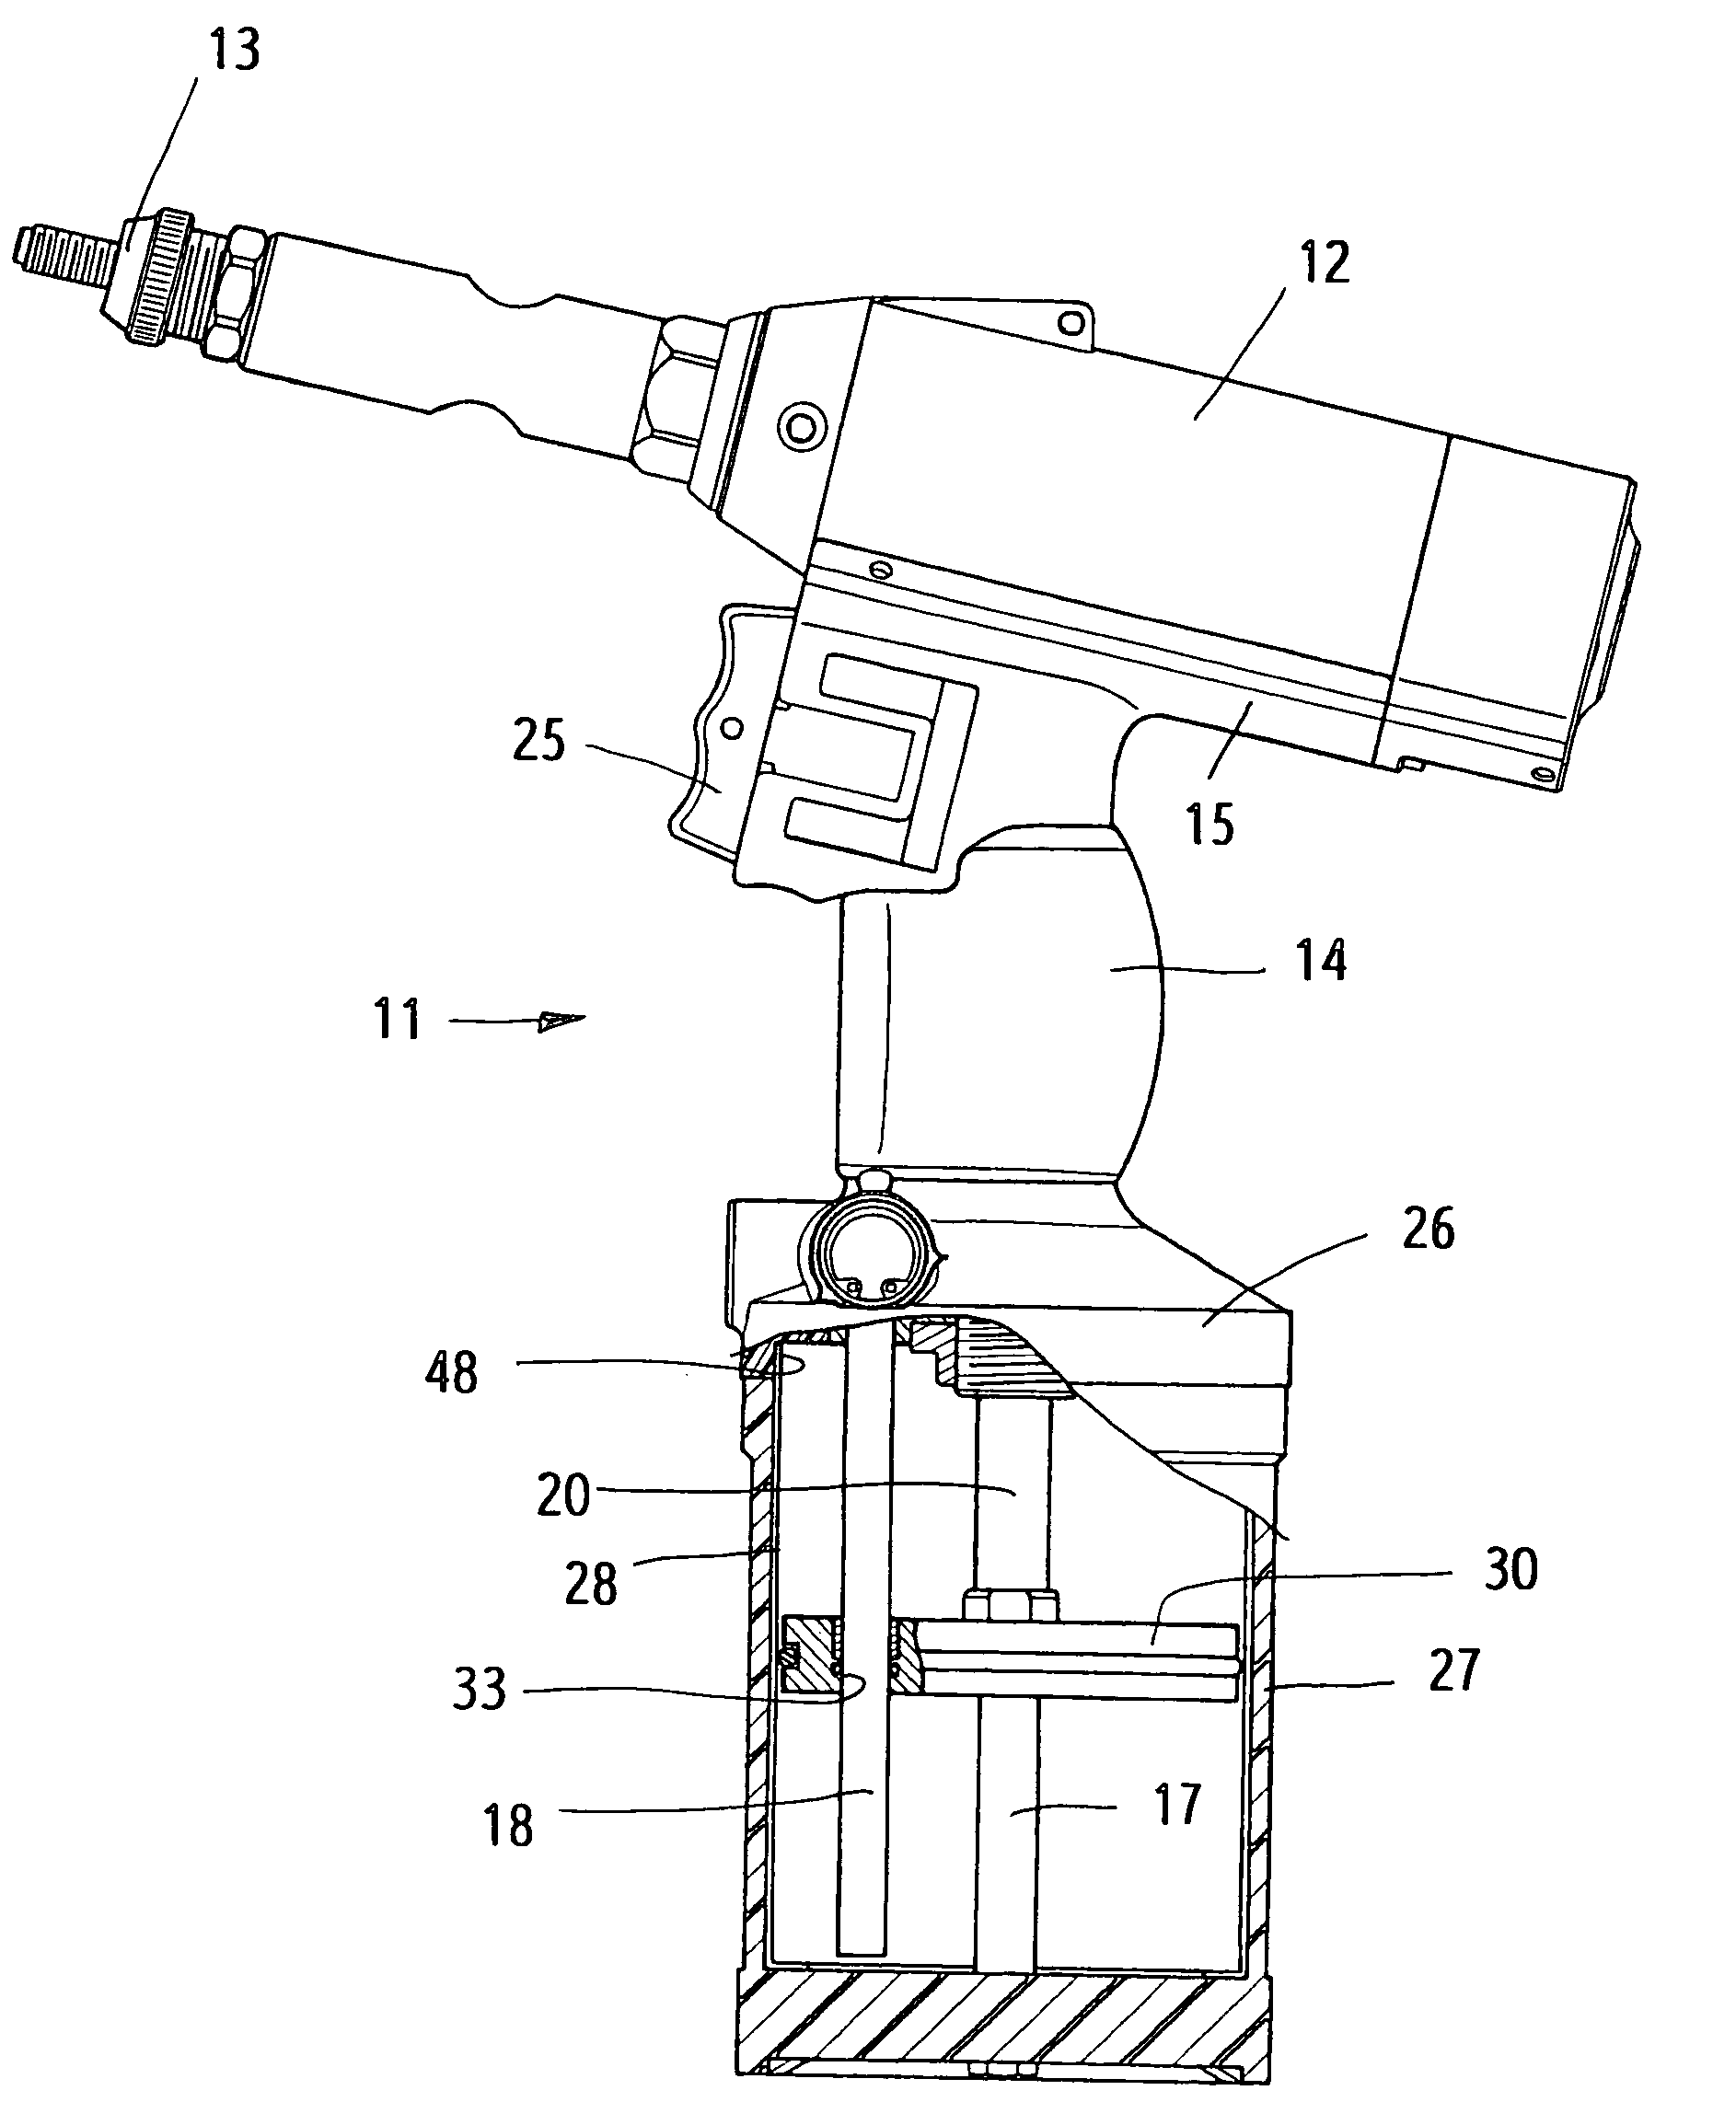 Structure of a rivet nut gun